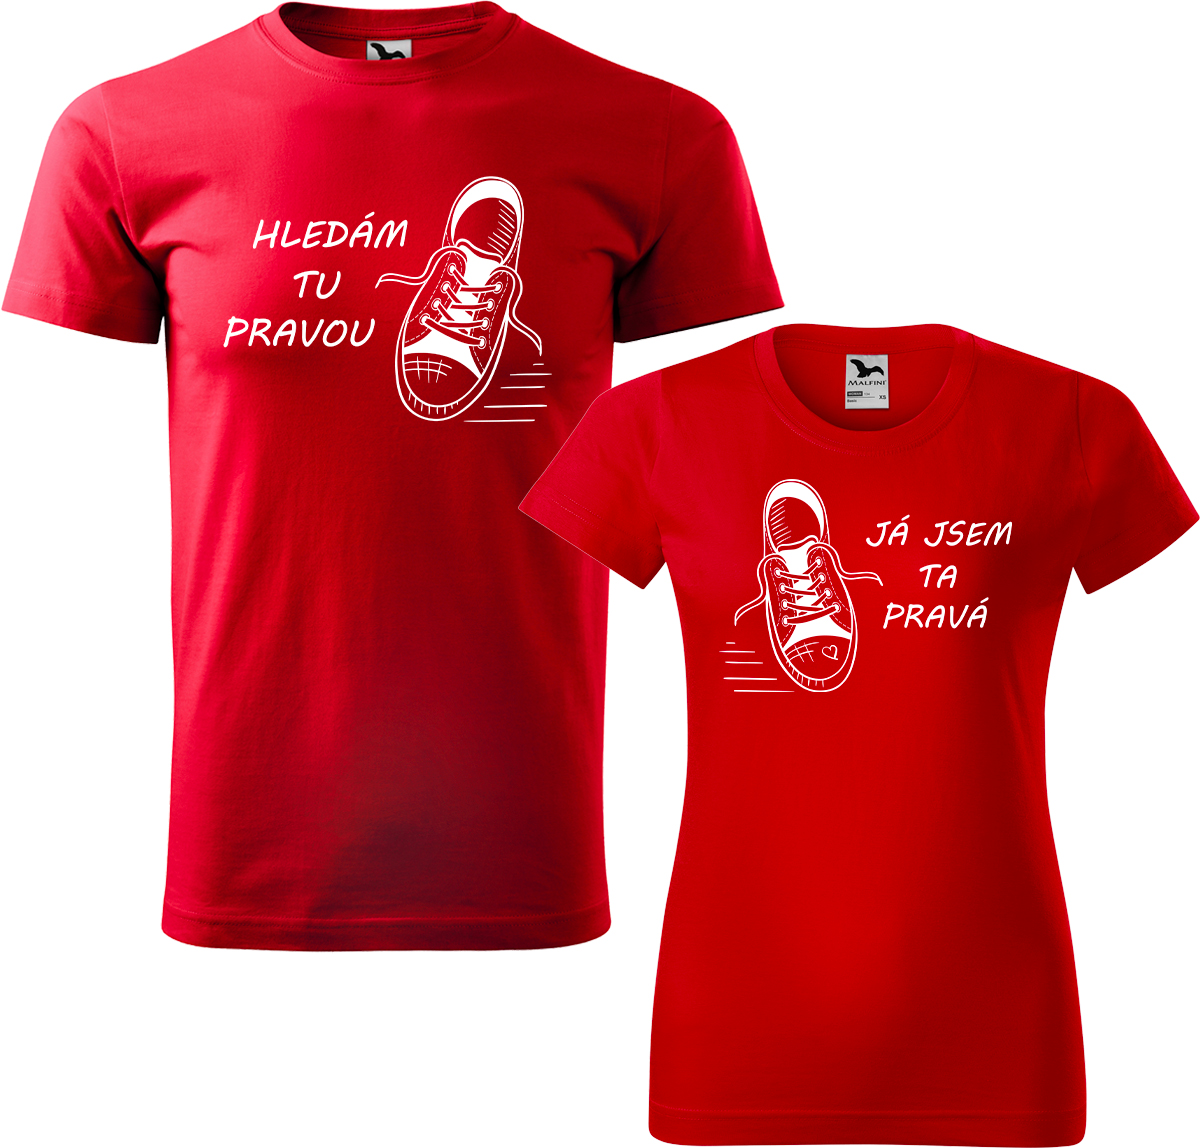 Trička pro páry - Kecky Barva: Červená (07), Velikost dámské tričko: 3XL, Velikost pánské tričko: 3XL